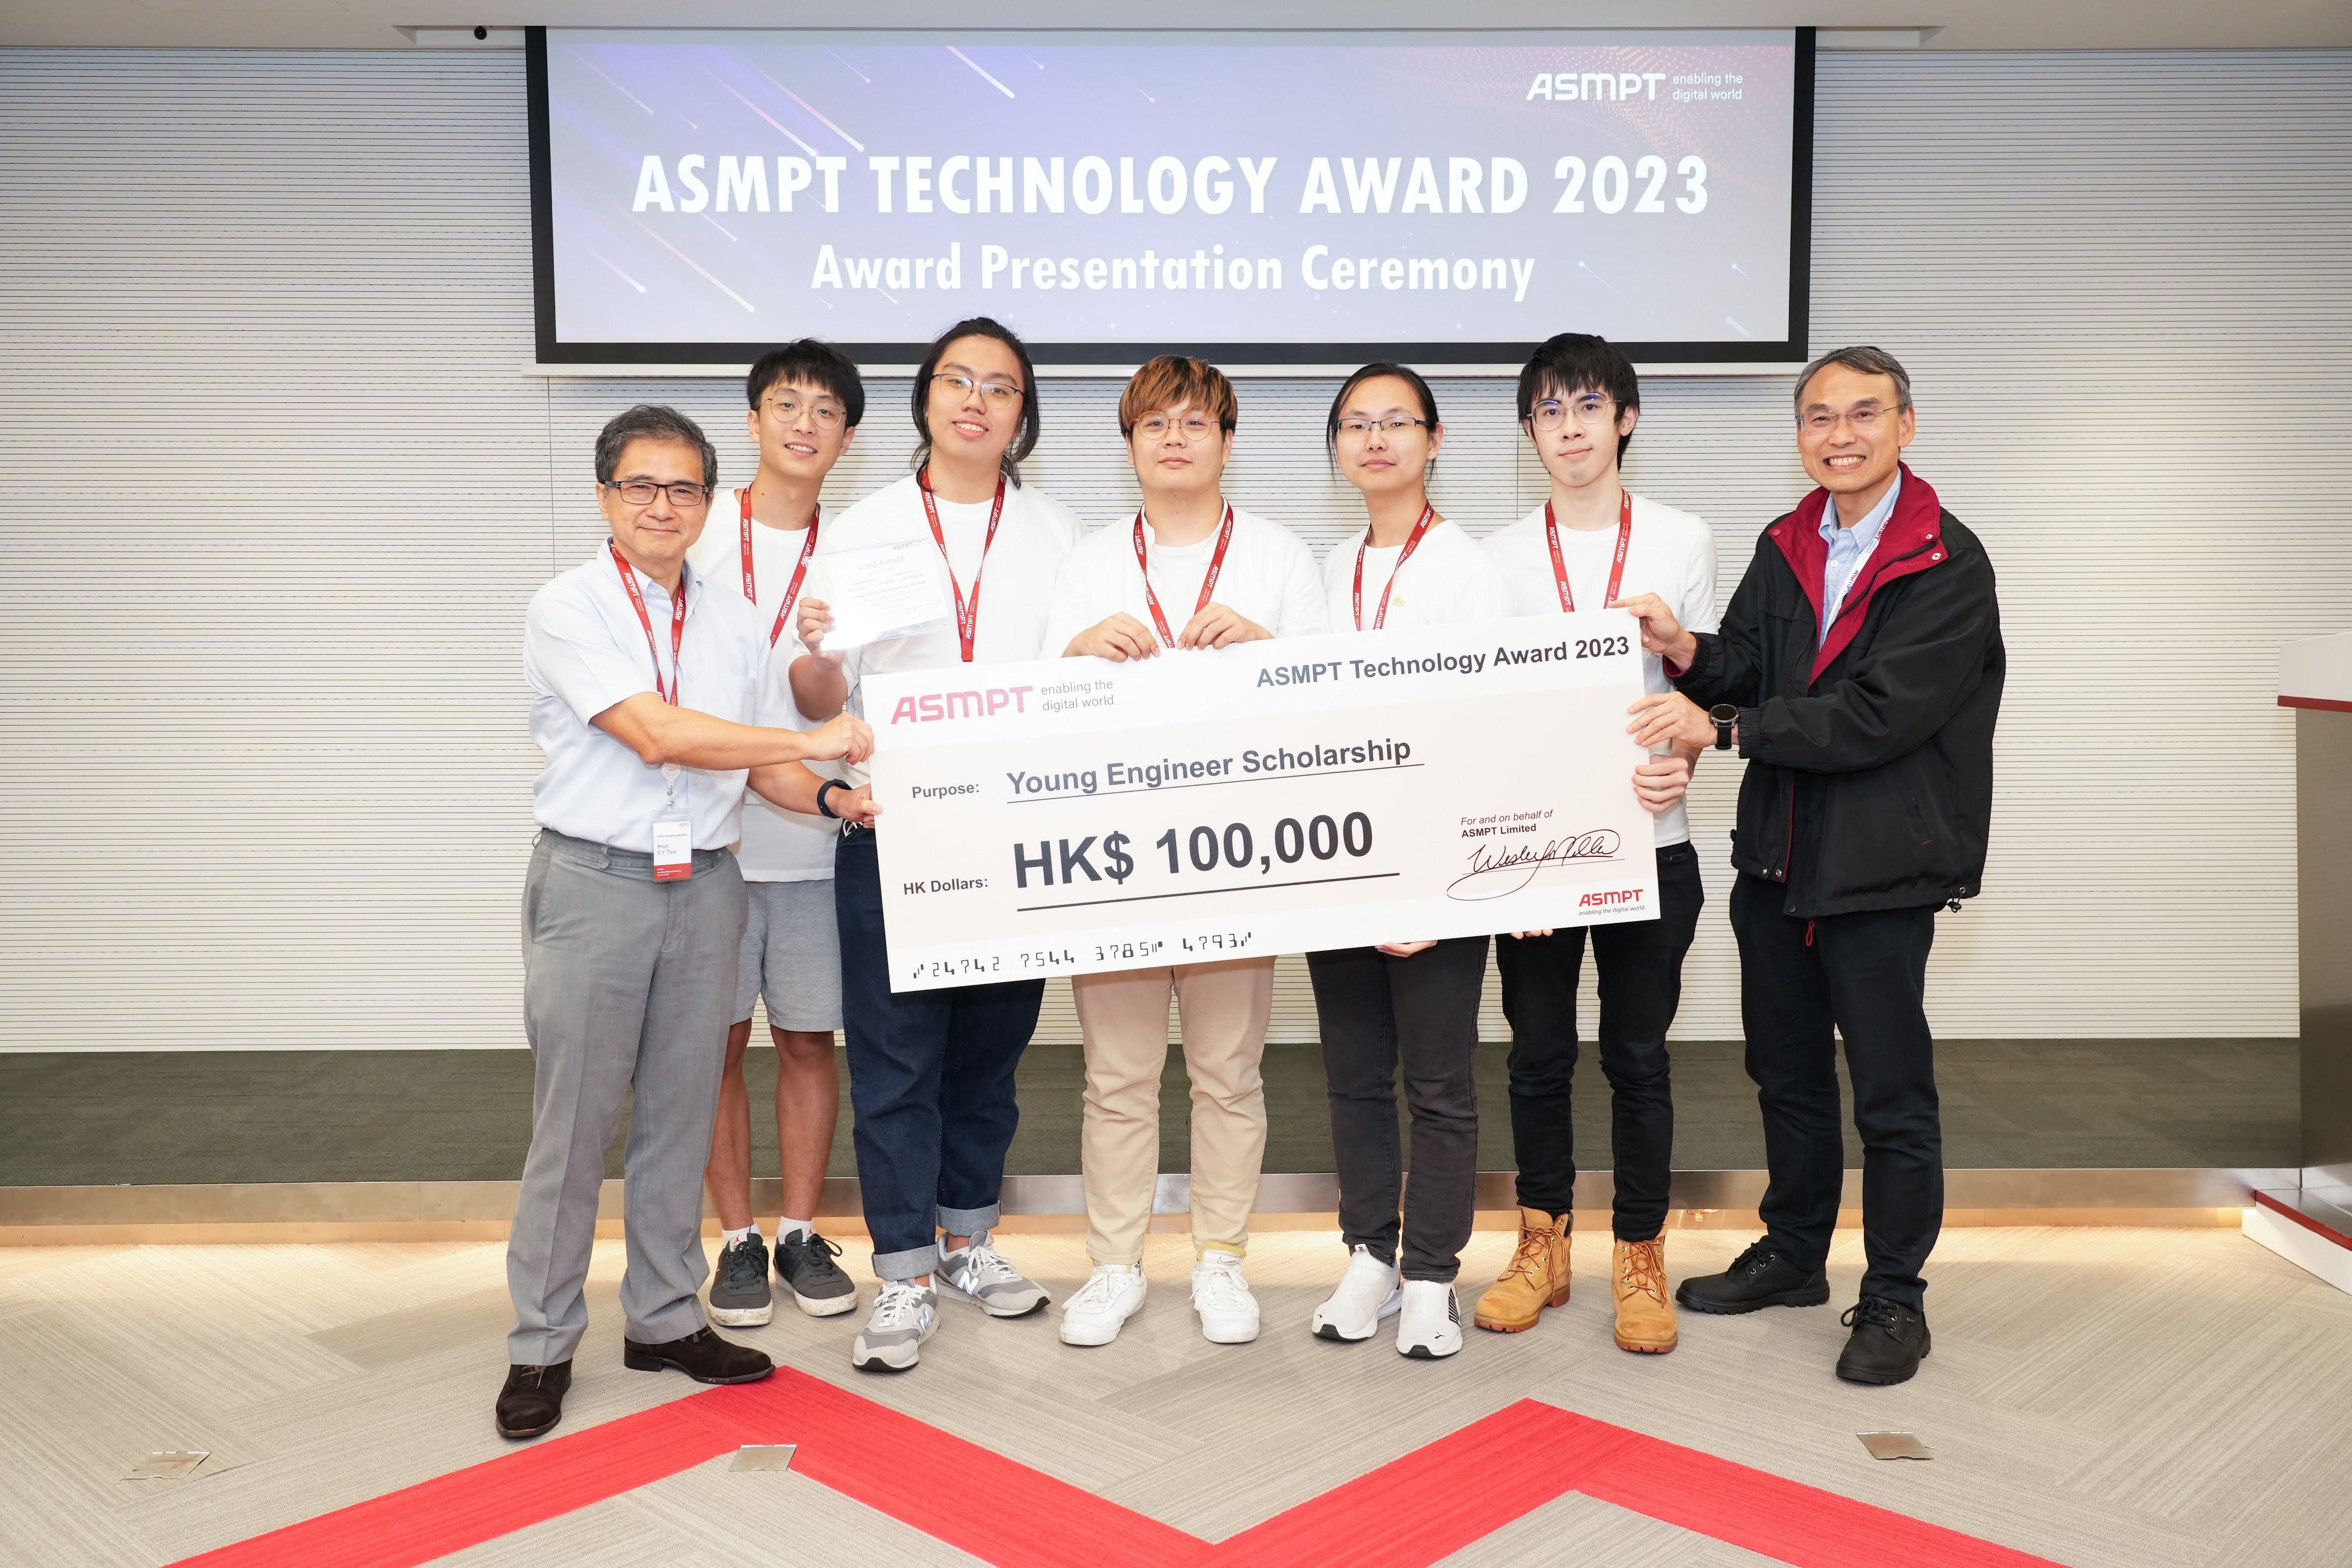 （左起）綜合系統與設計學部主任崔志英教授、學部學生廖栢軒、馬思朗、施松林、彭宇賢及張灝軒，以及ASMPT的代表於7月7日舉辦的2023年ASMPT科技獎頒獎典禮上留影。